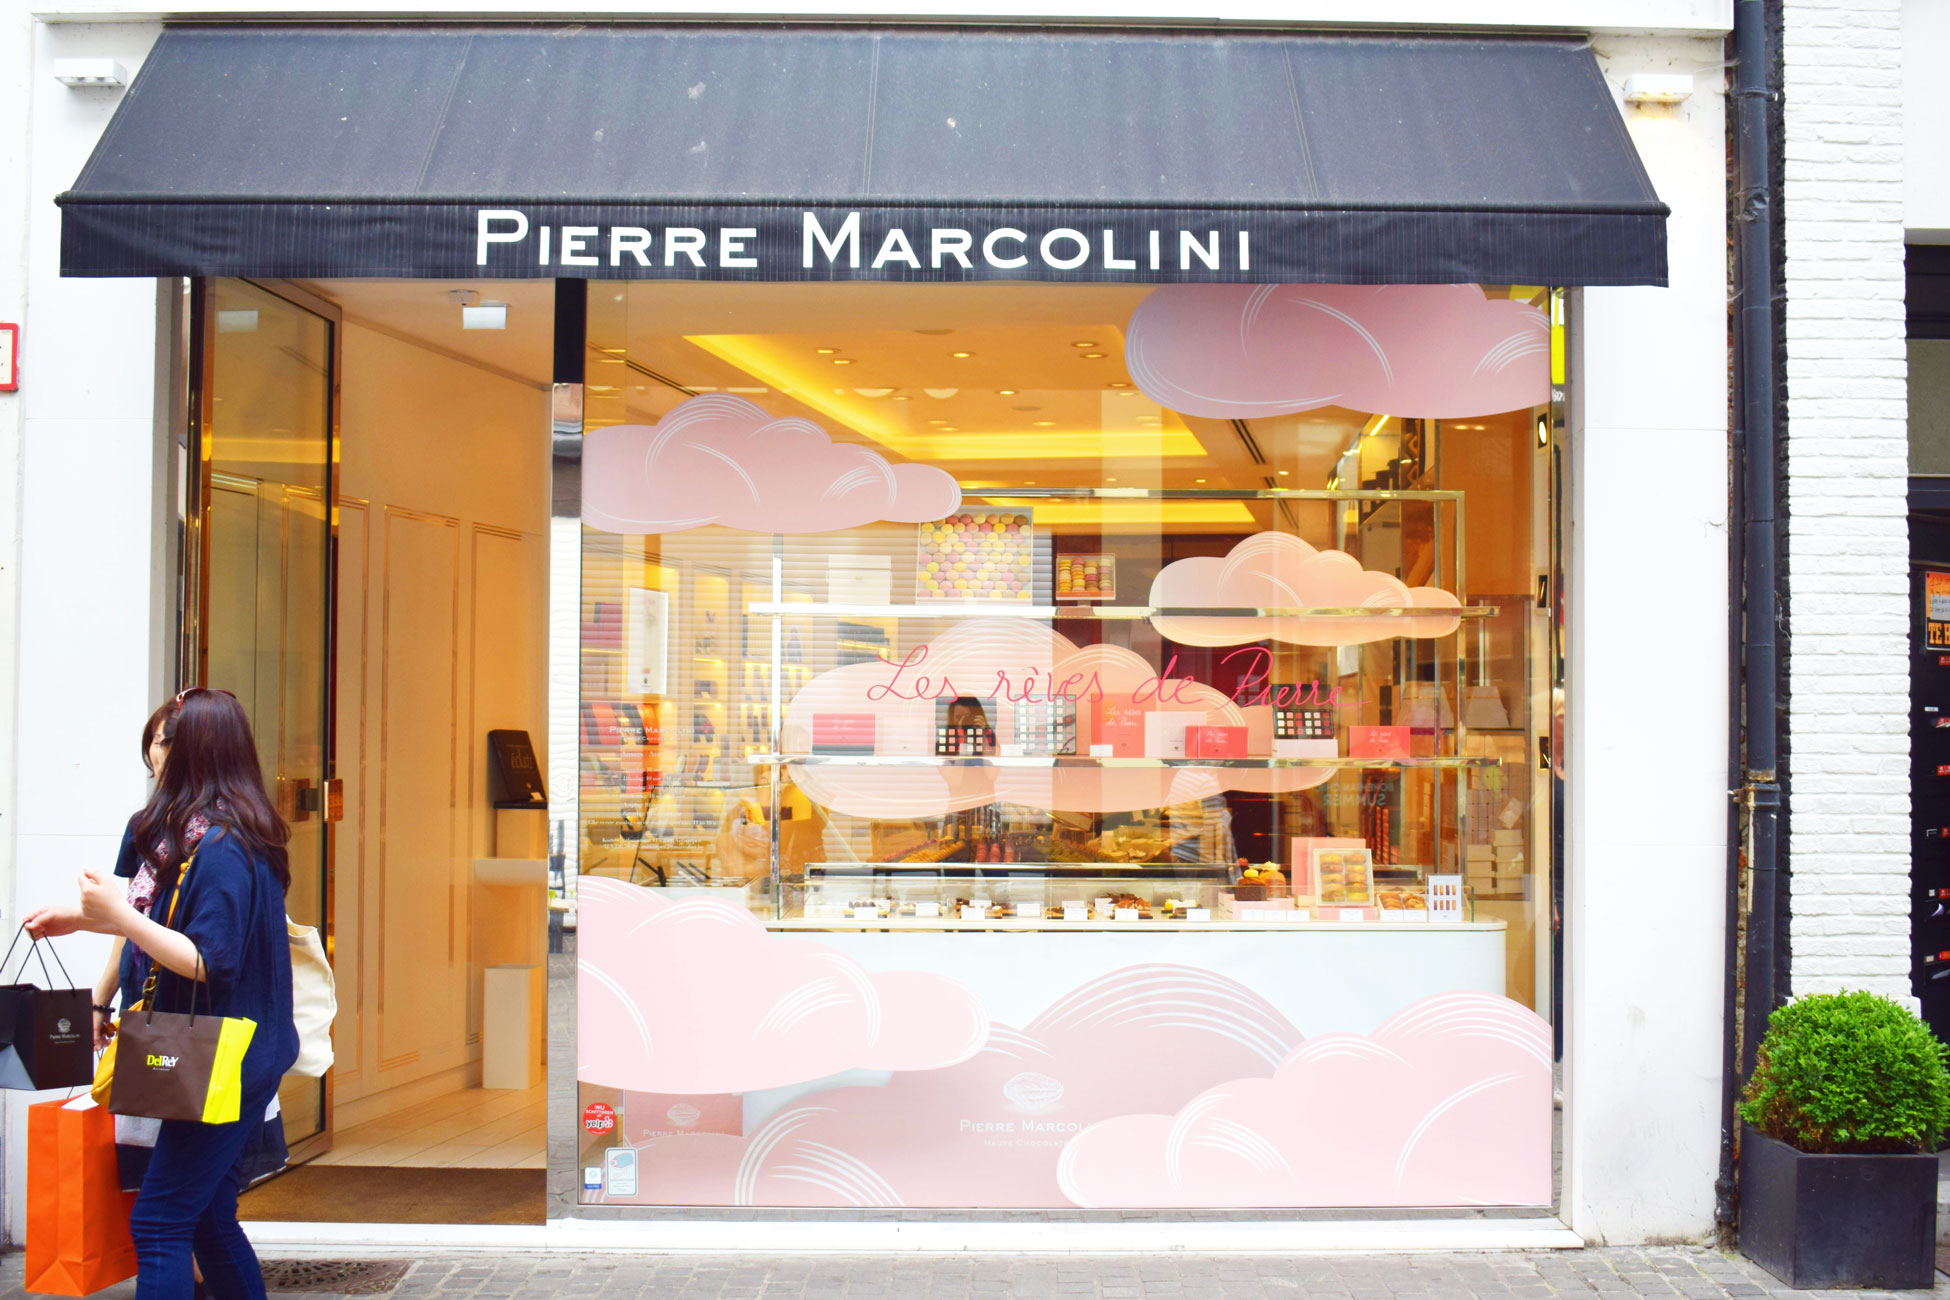 Vitrine de la boutique Pierre Marcolini d'Anvers scénographiée avec des nuages roses